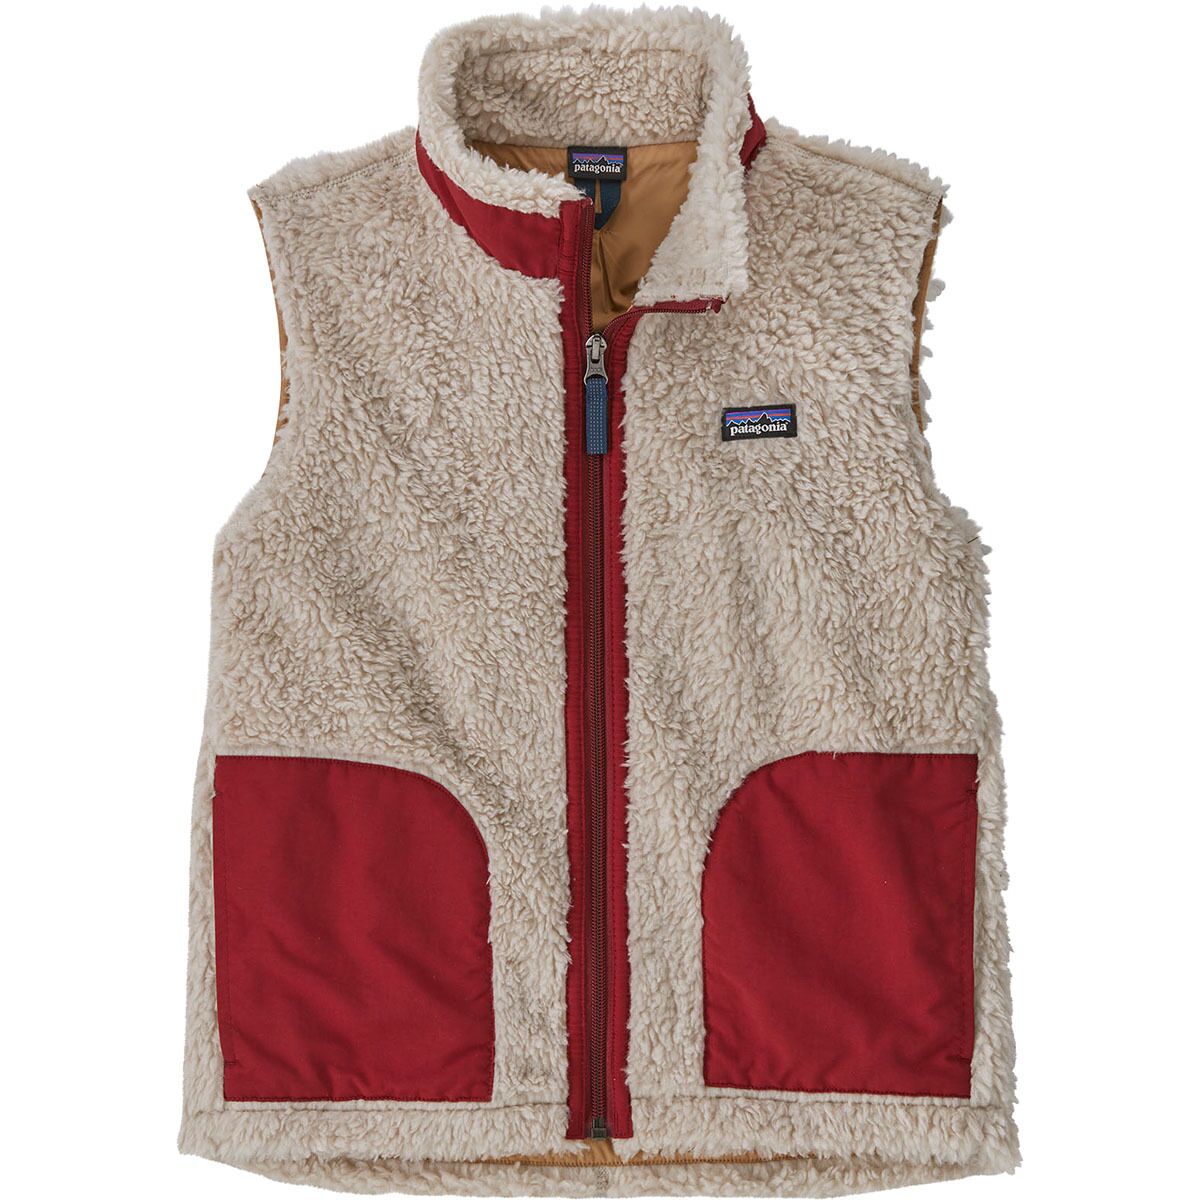 Vintage Patagonia Fleece Vests Sweatshirt Top Hiking Brand Sherpa